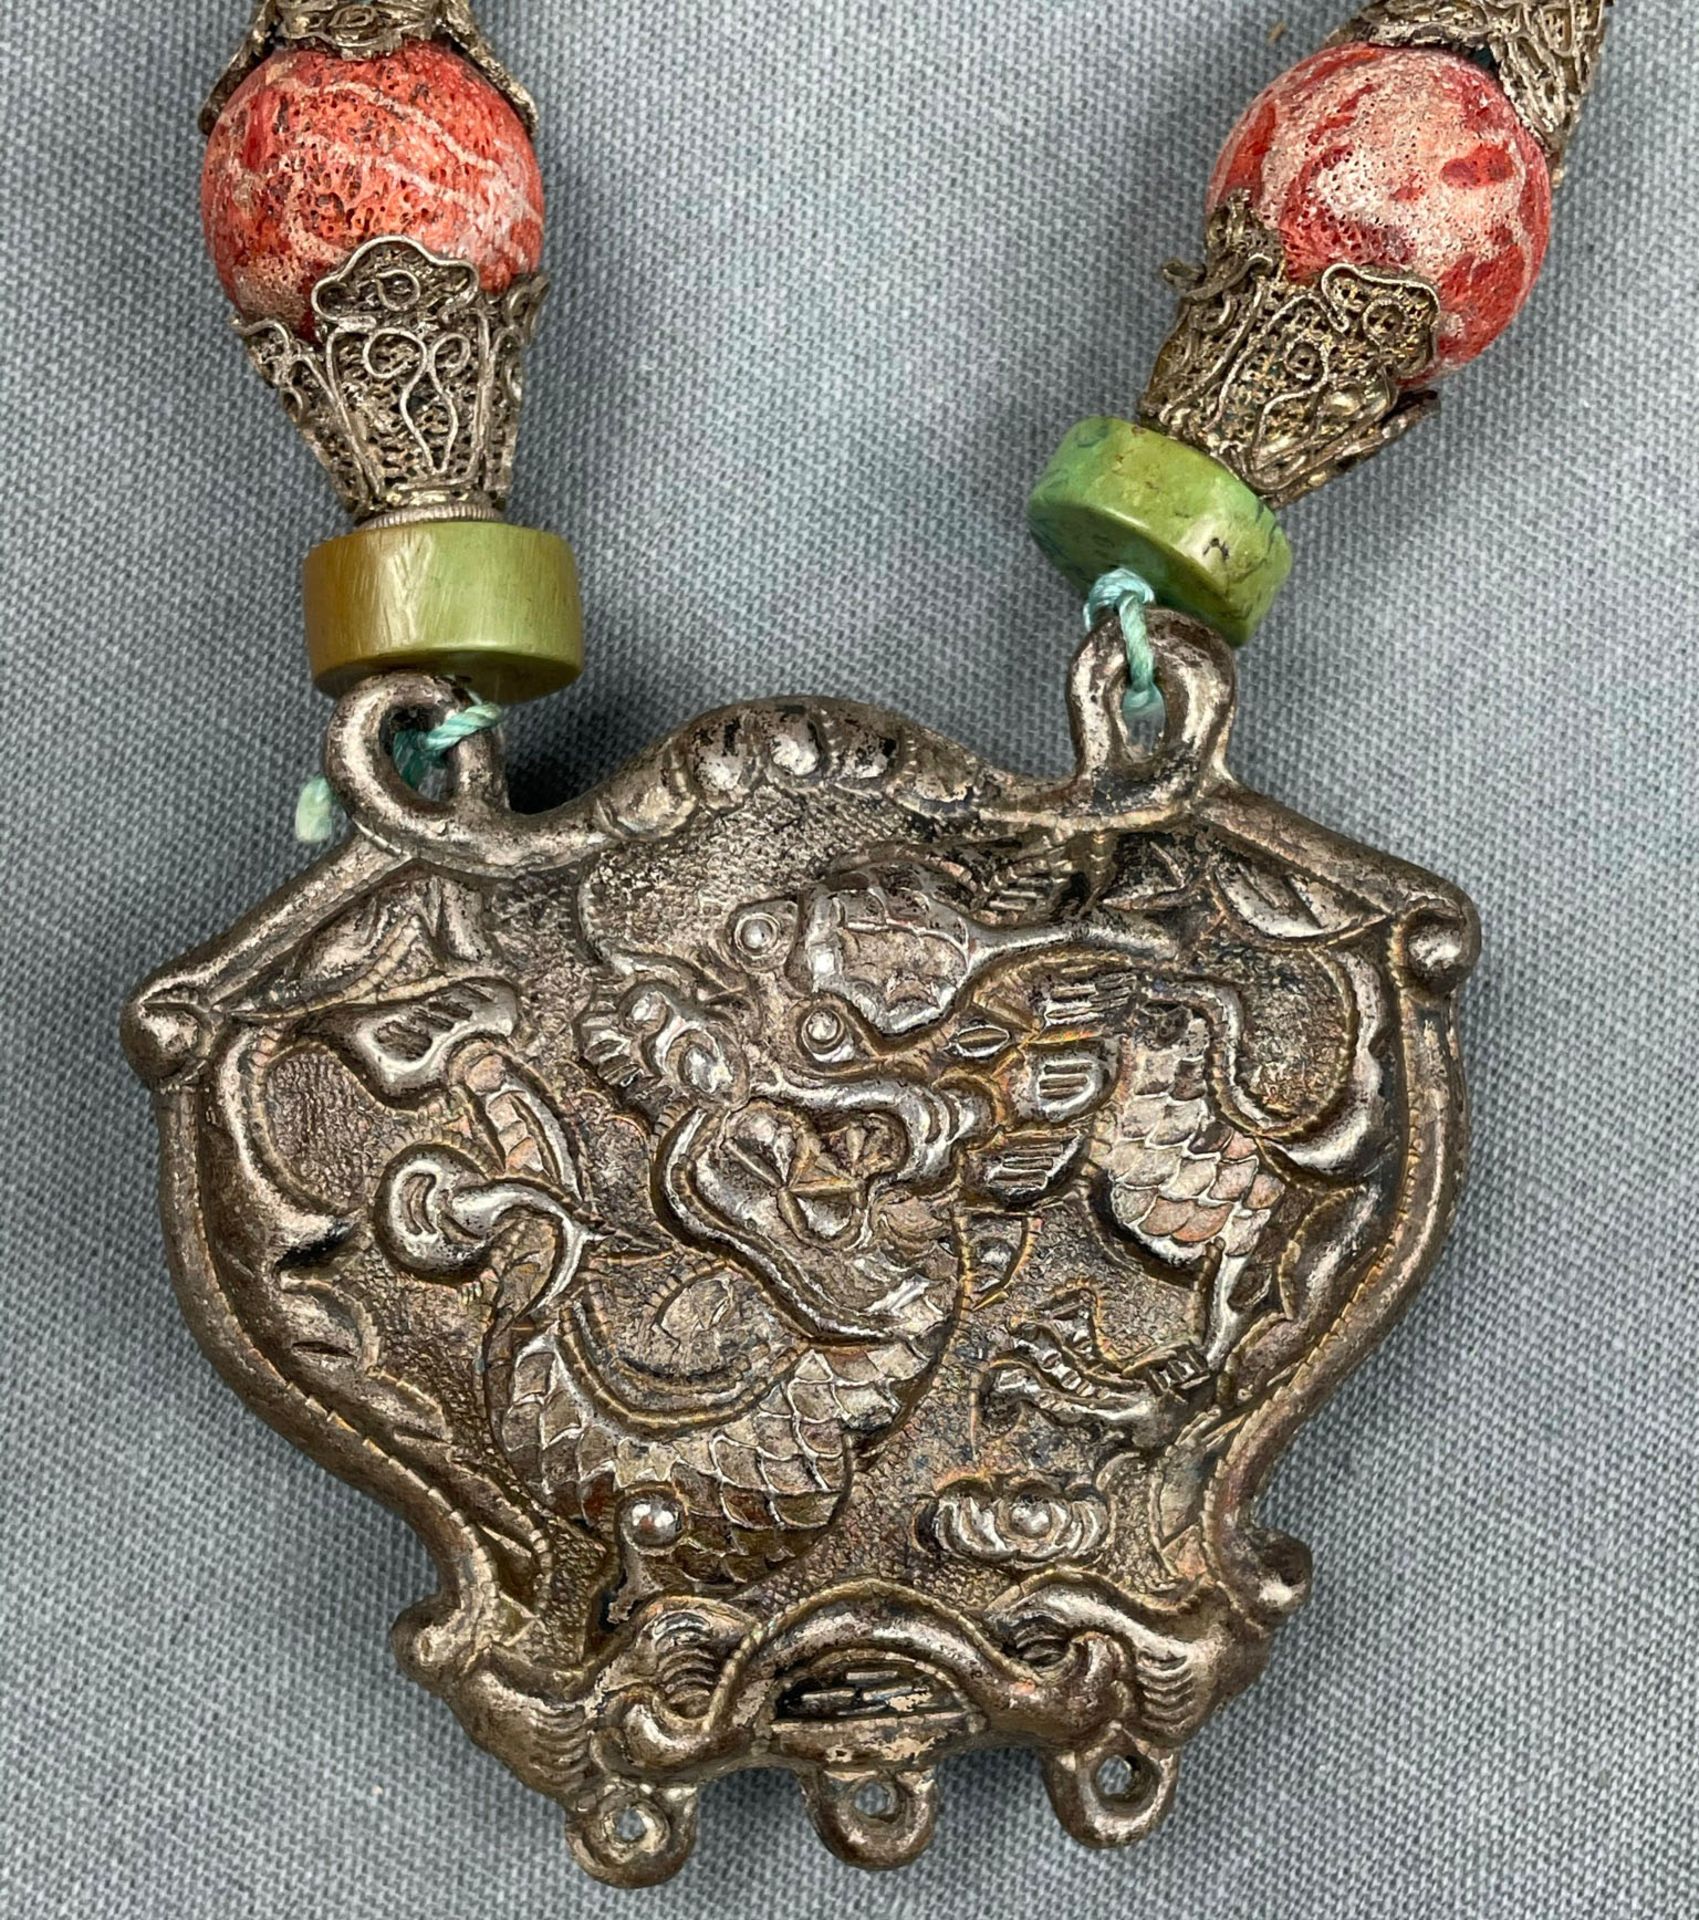 Collier Kette mit Drachen - Anhänger. Wohl Tibet, China antik. - Bild 5 aus 9